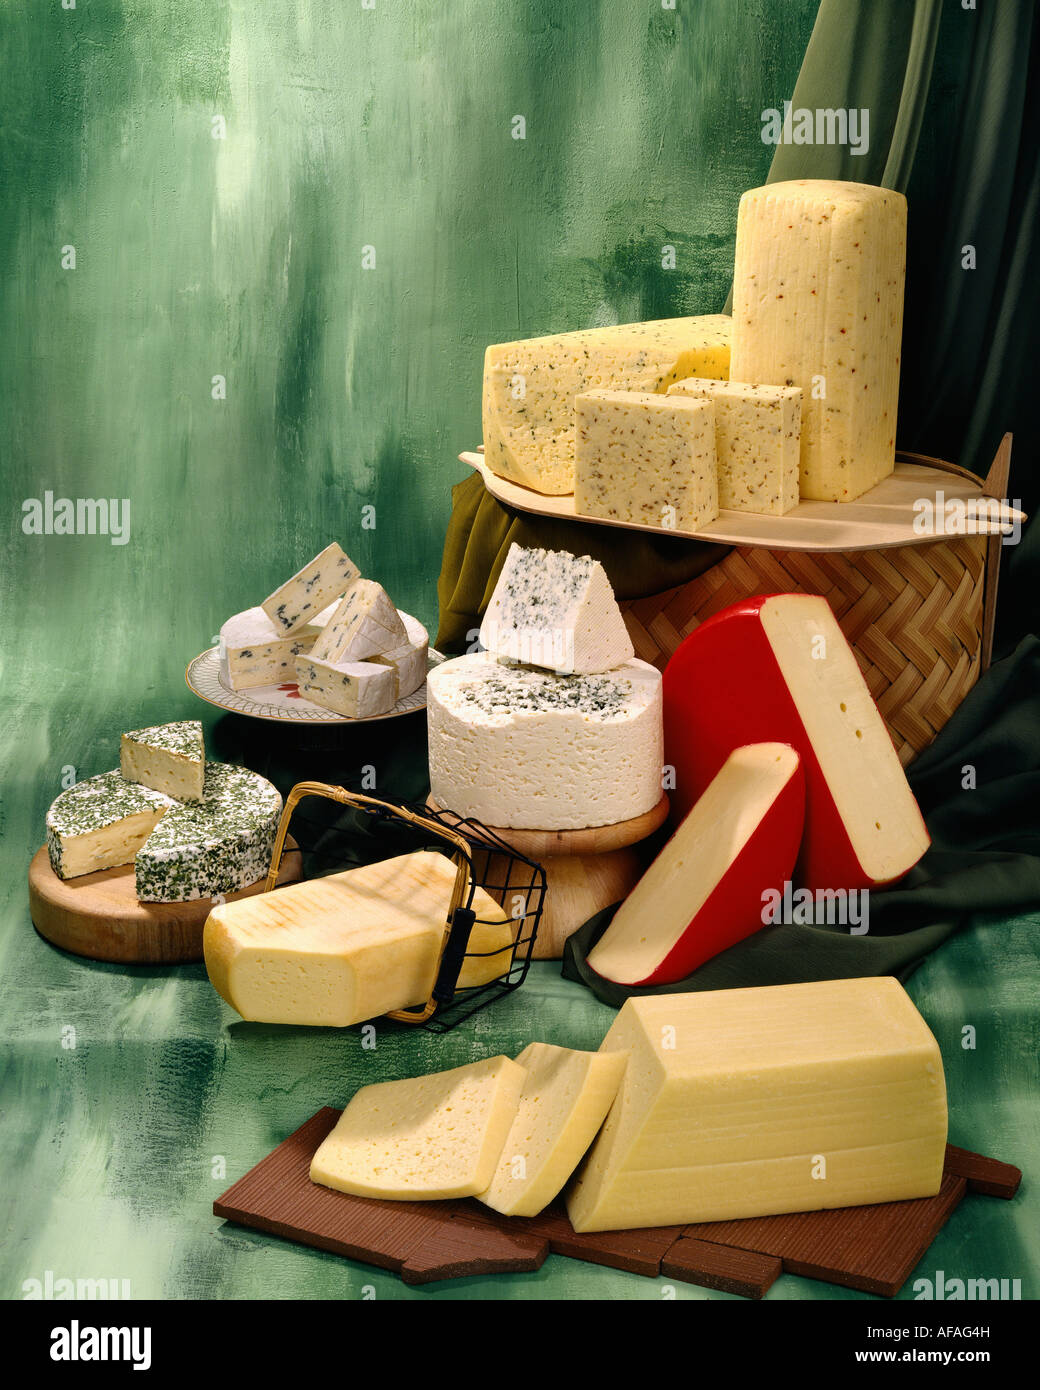 Dänischer Käse in Gruppe Farbfoto auf grün getönten gesprenkelte Hintergrund. Hochformat, Studio Tischplatte. Klassisches Bild Stockfoto